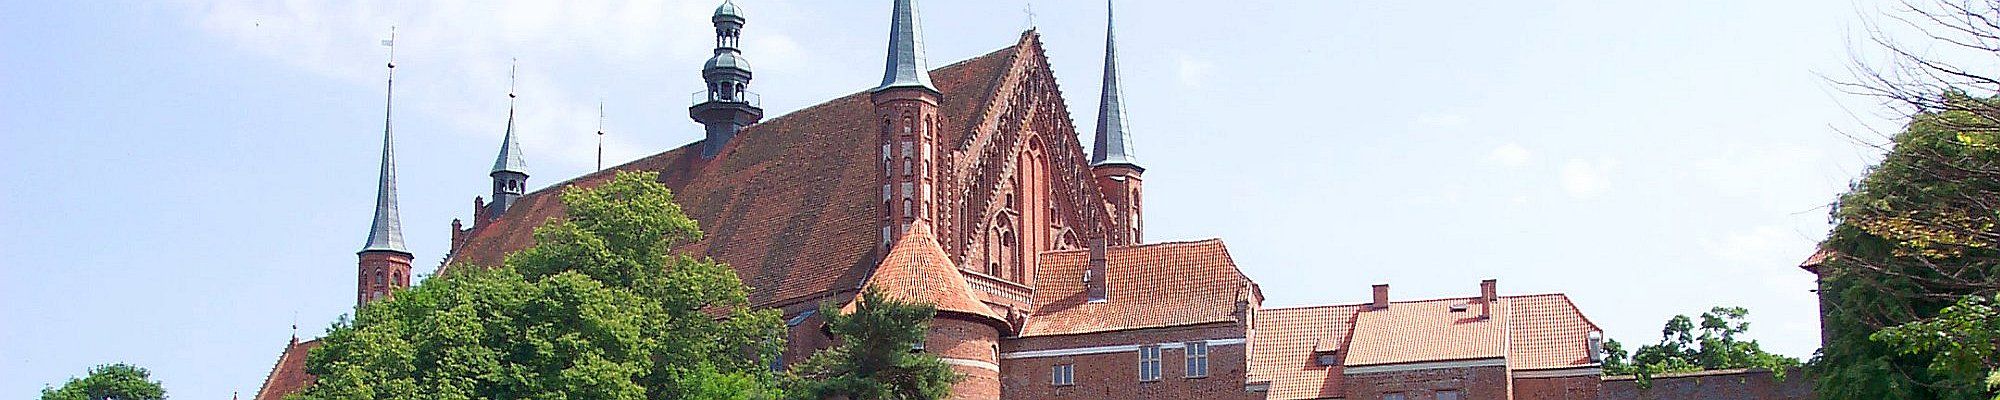 Frauenburger Dom